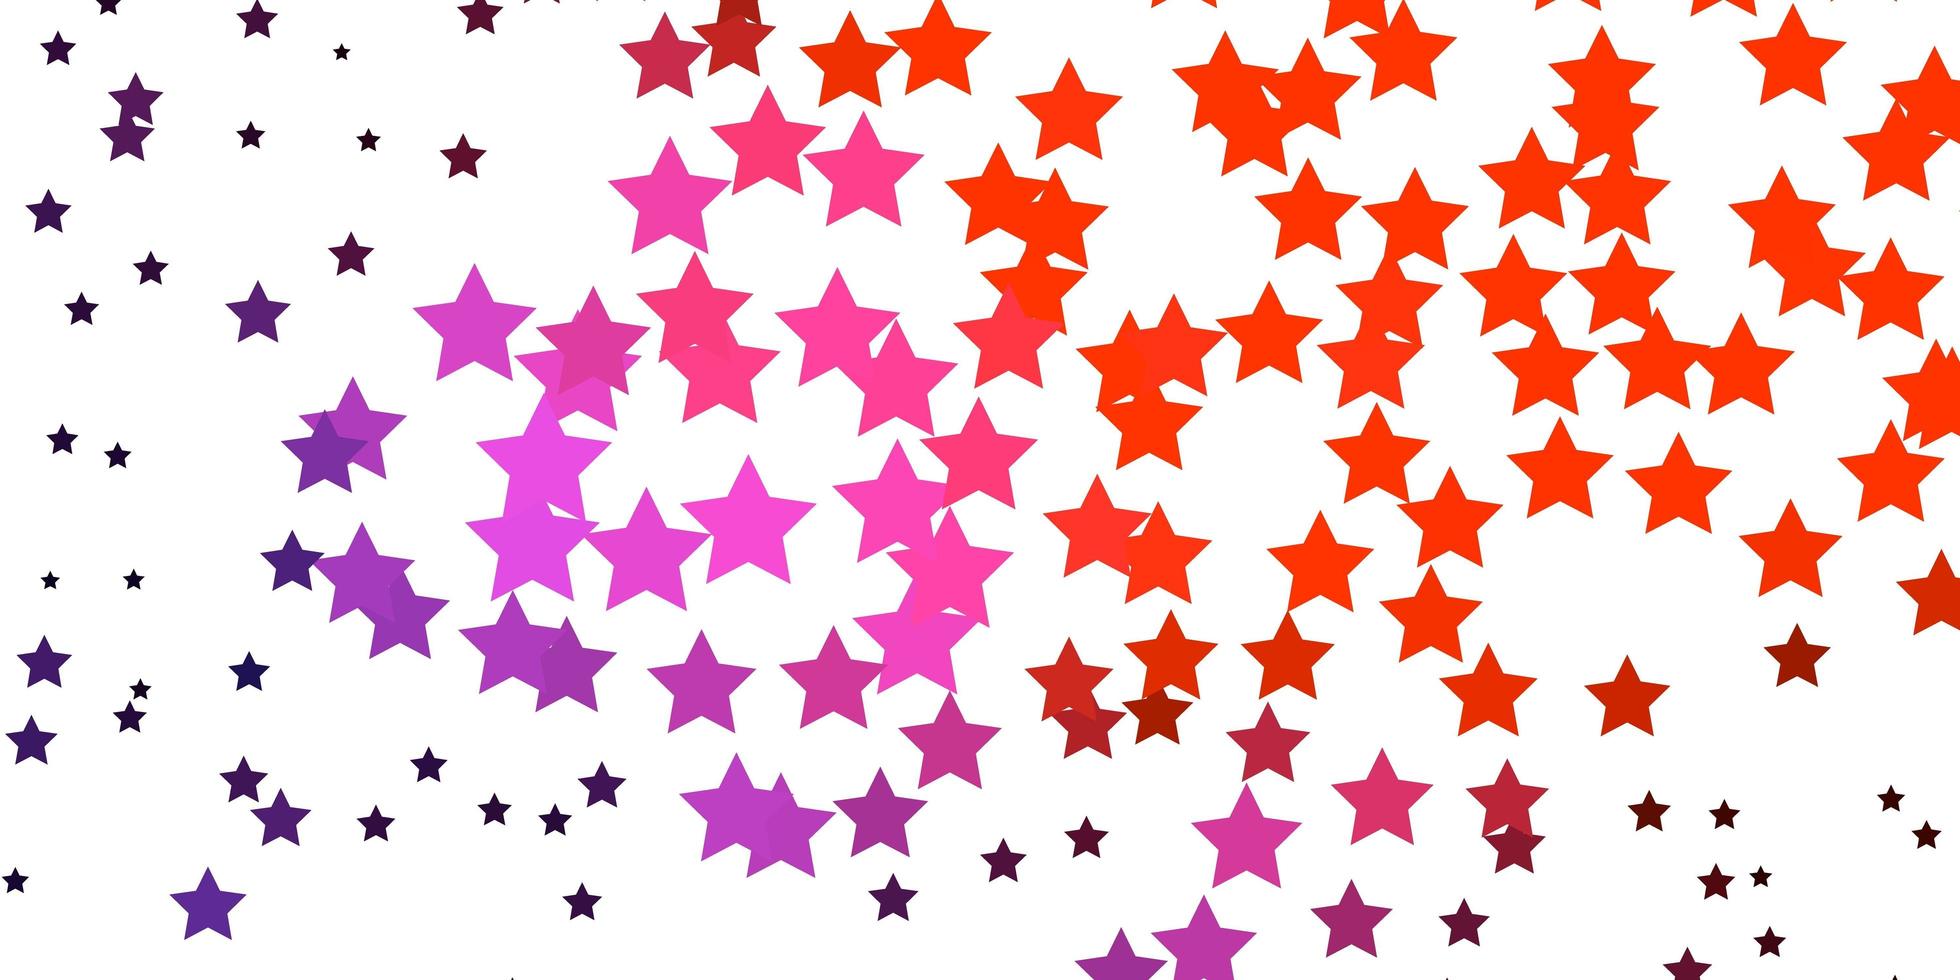 modello vettoriale rosa scuro, rosso con stelle astratte. brillante illustrazione colorata con stelle piccole e grandi. modello per incartare i regali.